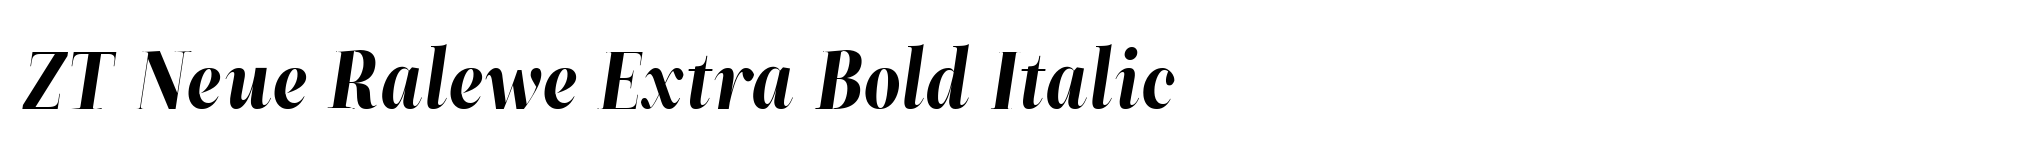 ZT Neue Ralewe Extra Bold Italic image